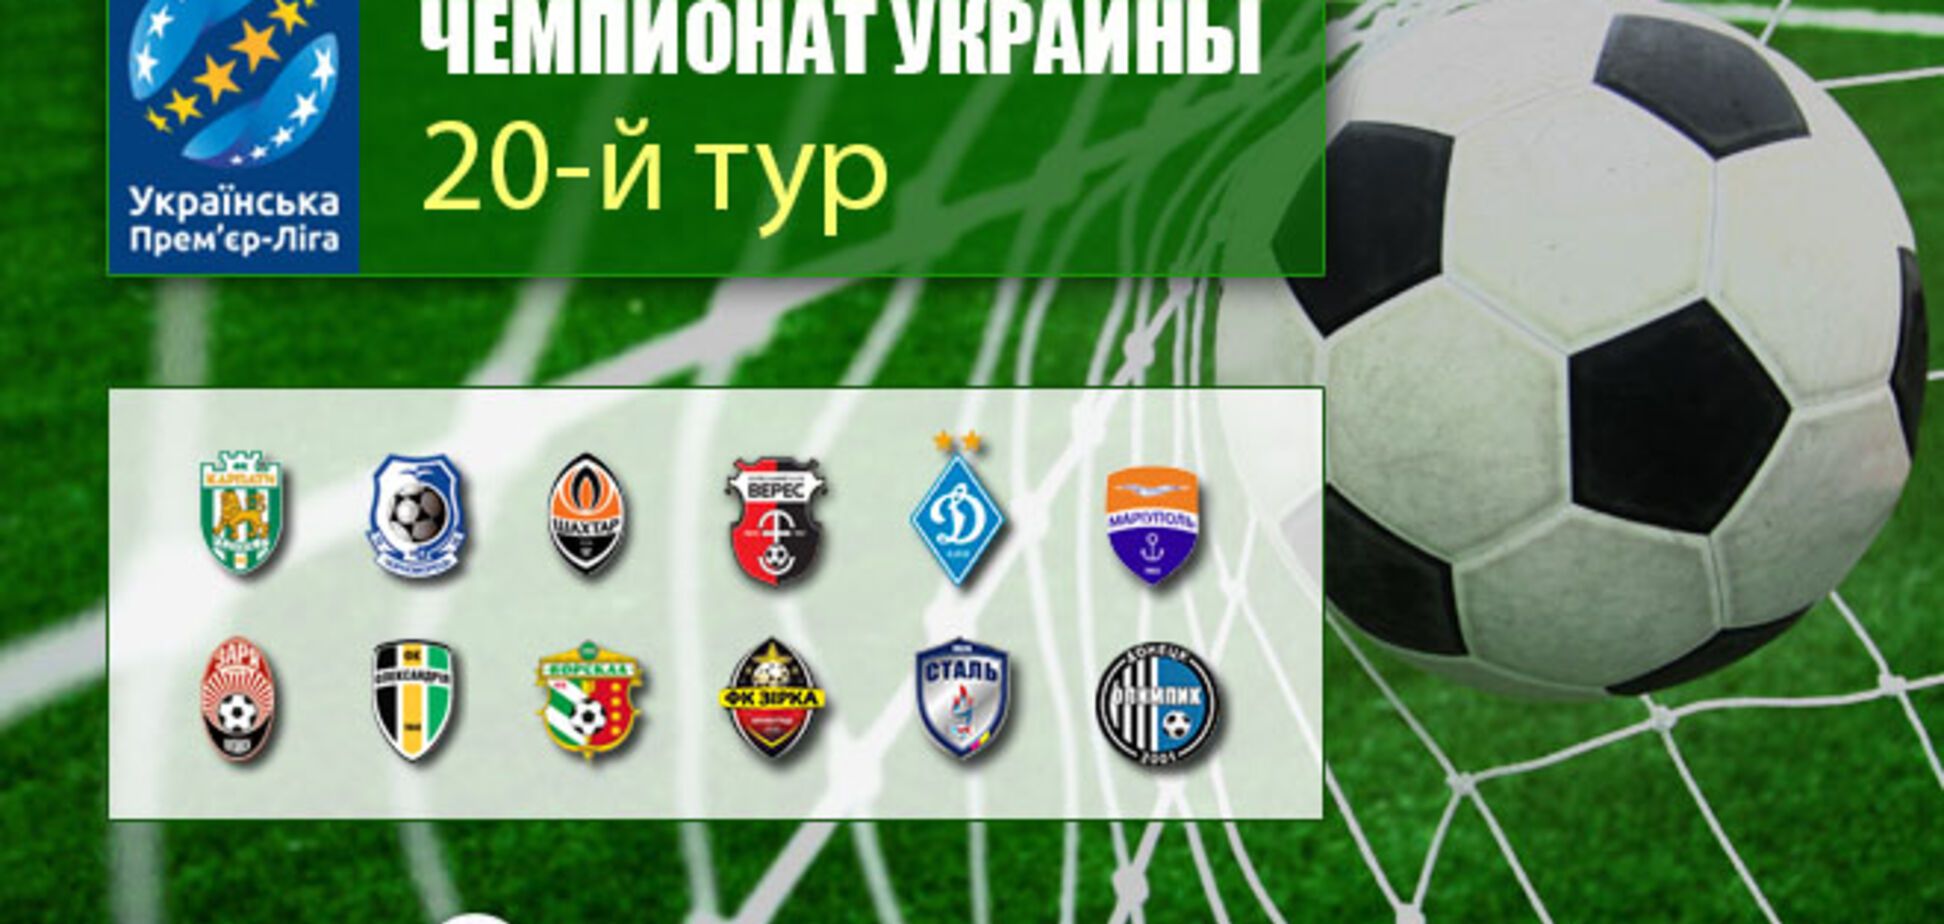 20-й тур чемпіонату України з футболу: результати, розклад трансляцій